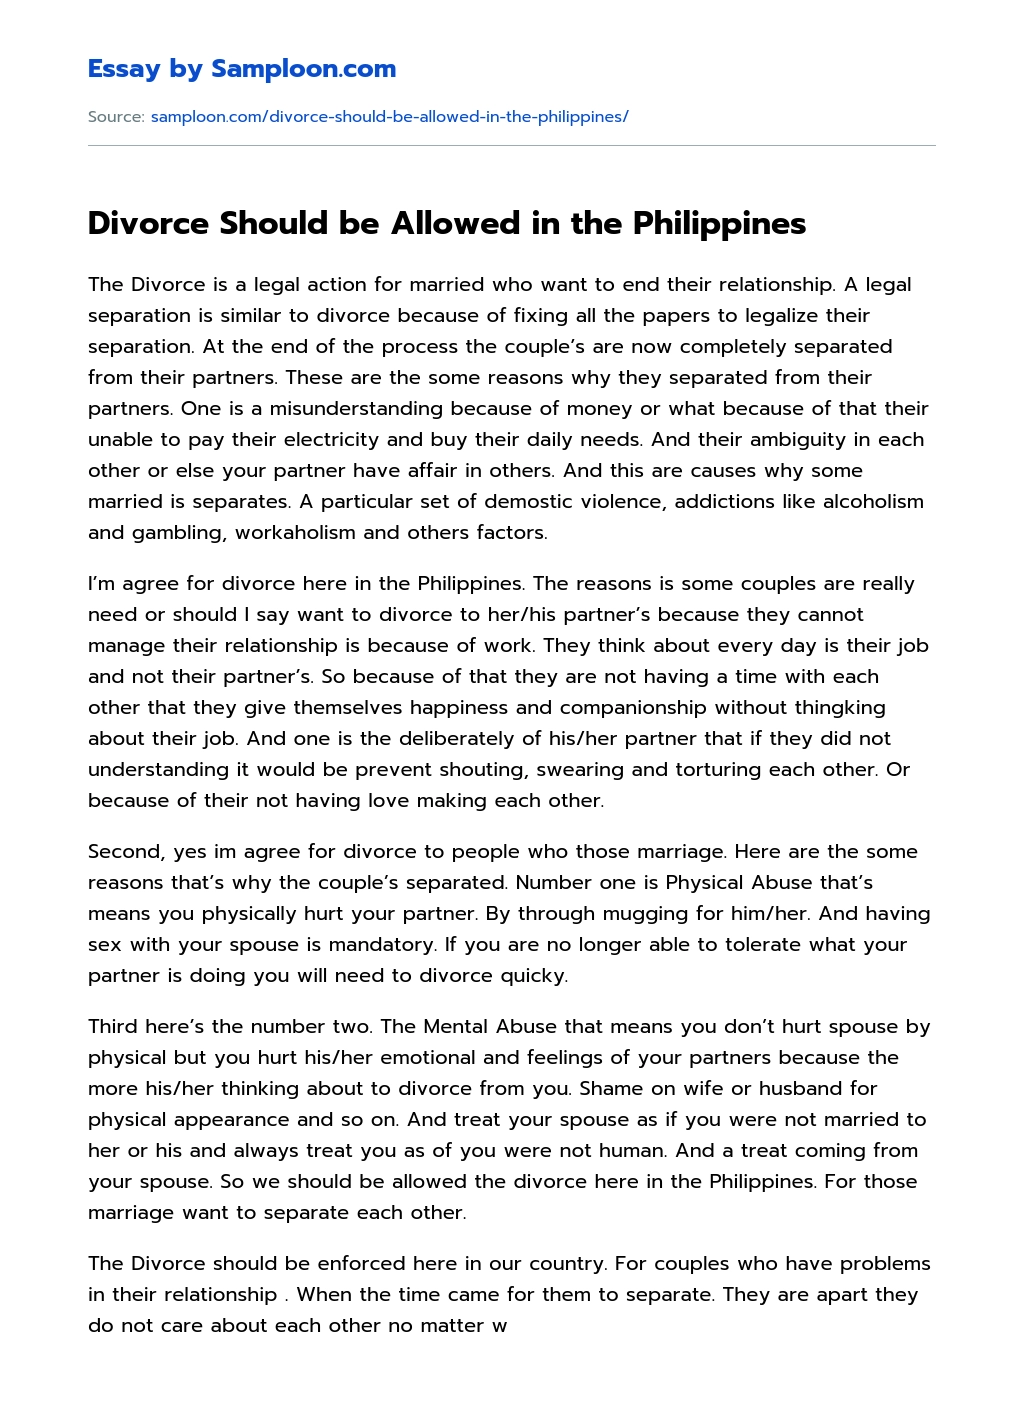 argumentative essay about legalizing divorce